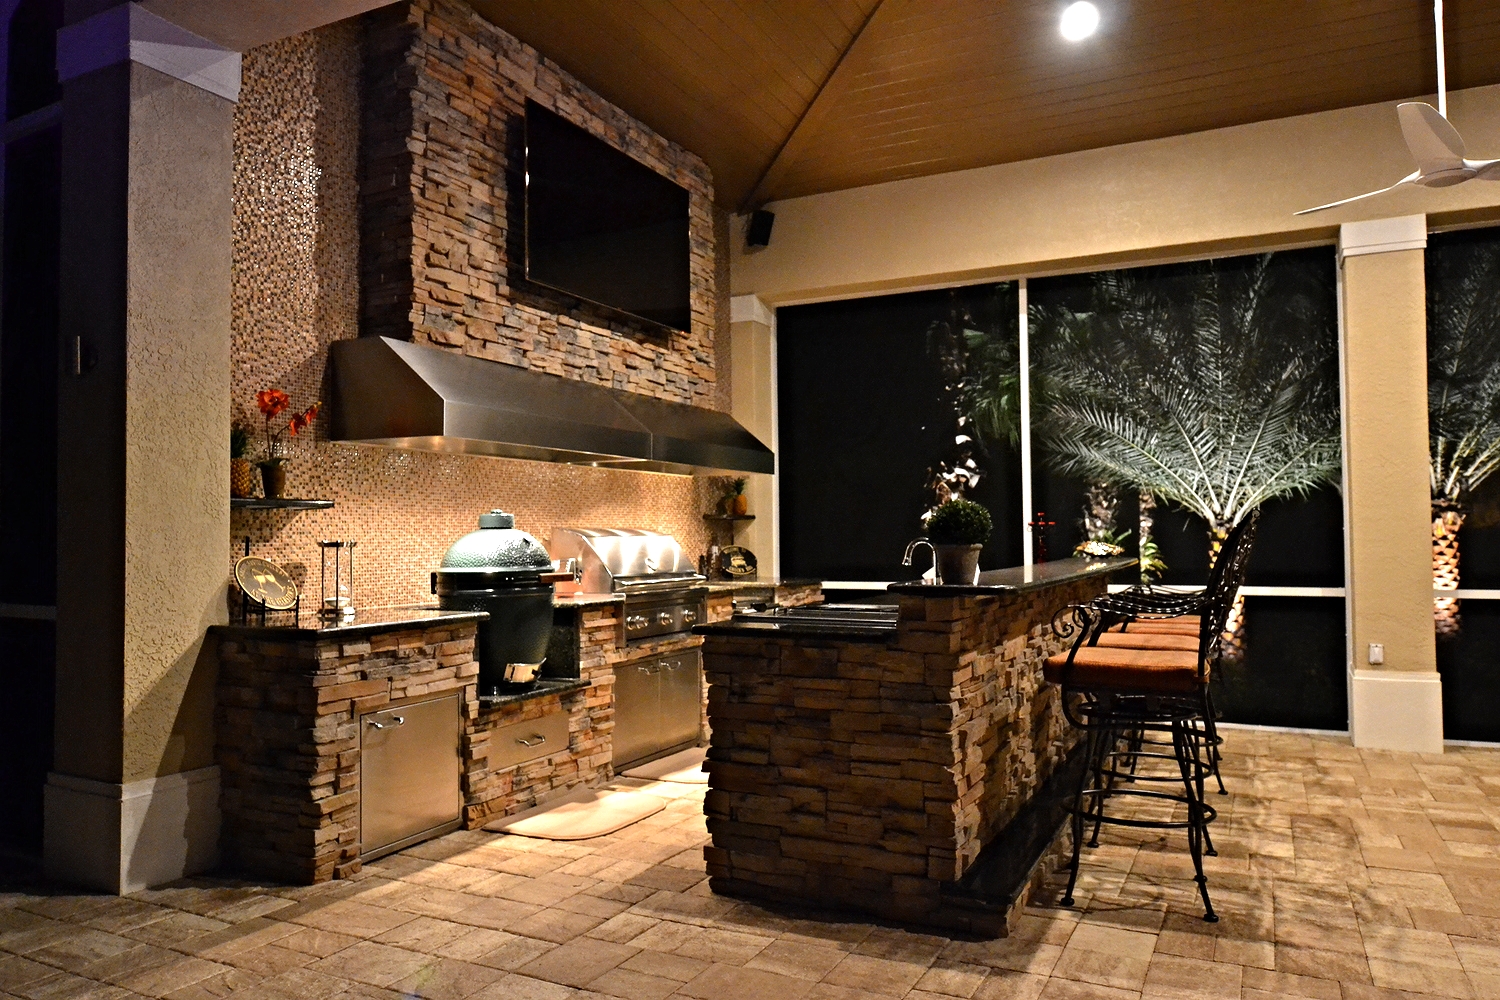 Outdoor Kitchens Gallery | Premier Outdoor Living & Design